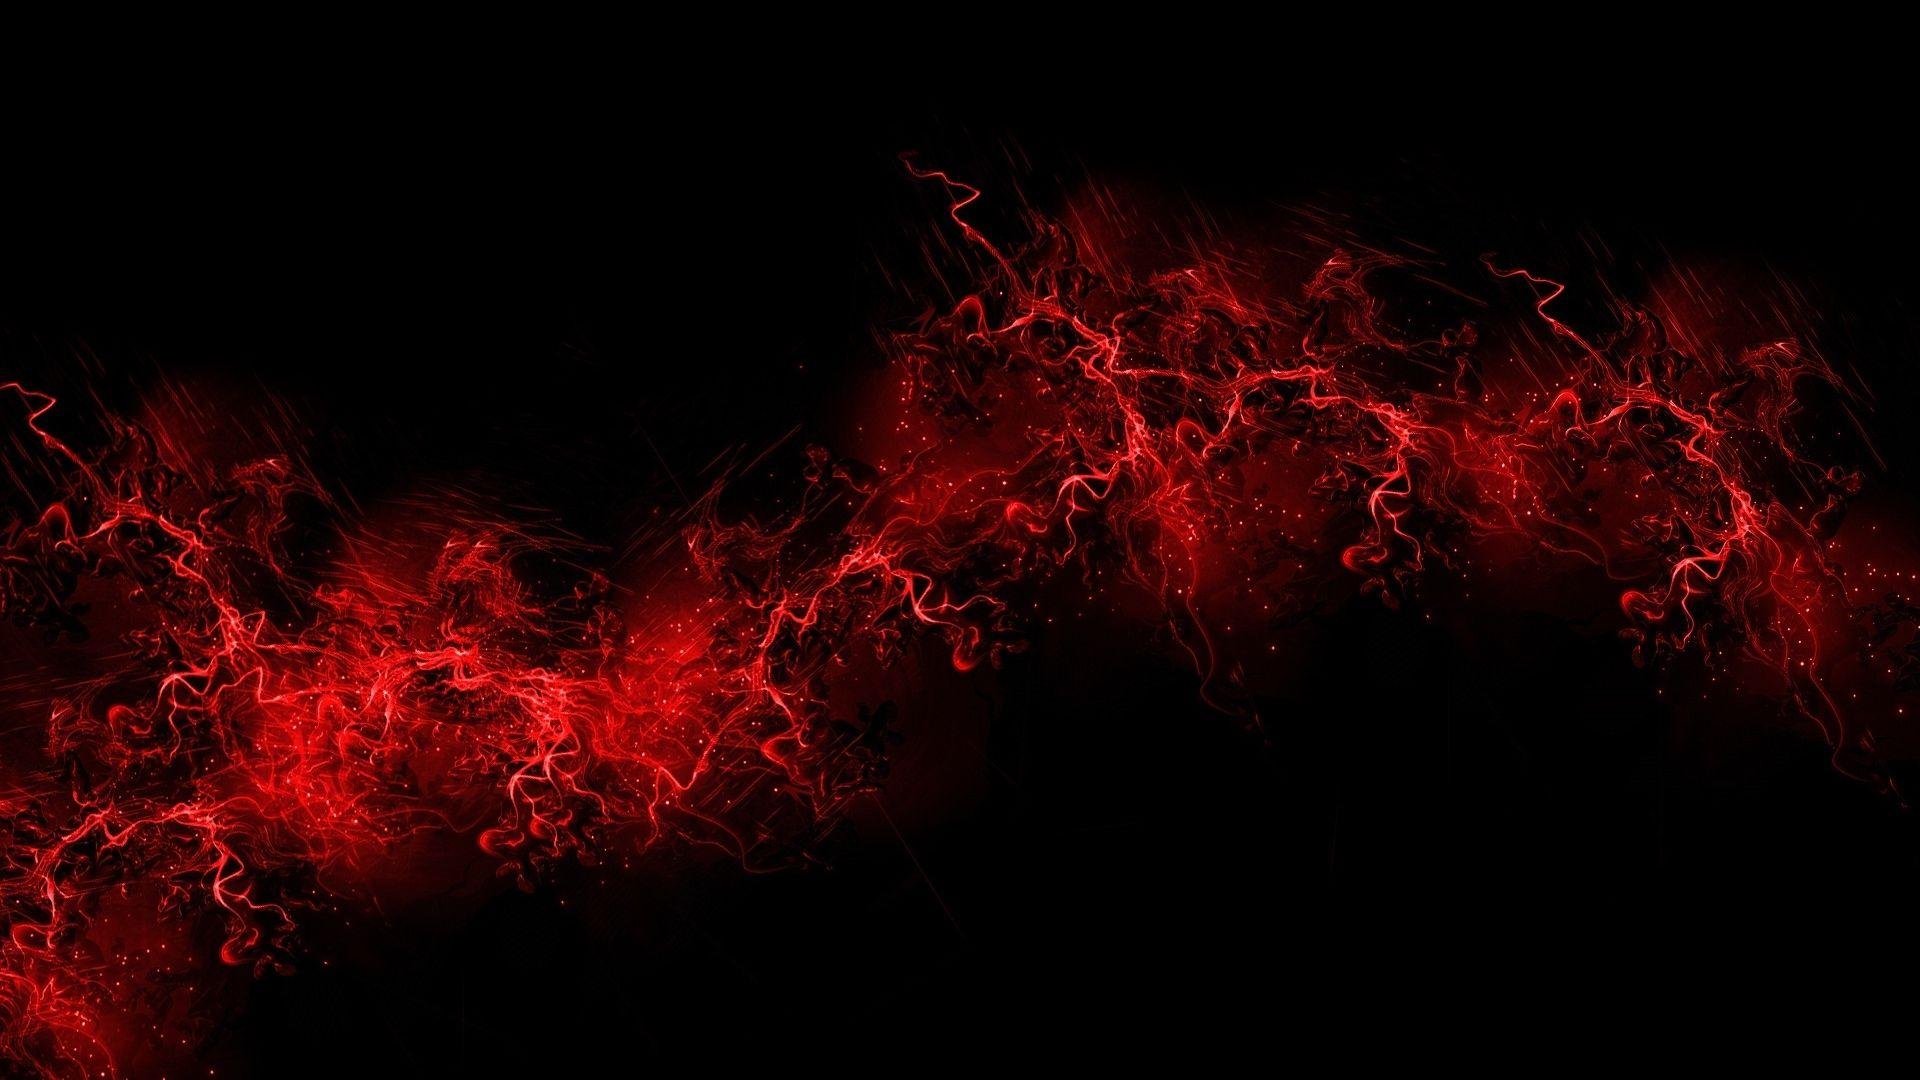 Hình nền đen đỏ là cách hoàn hảo để mang đến sự pha trộn giữa sự nghiêm túc và sự cảm quan nóng bỏng. Hãy xem qua các hình nền đen đỏ để cảm nhận được mức độ độc đáo của chúng.